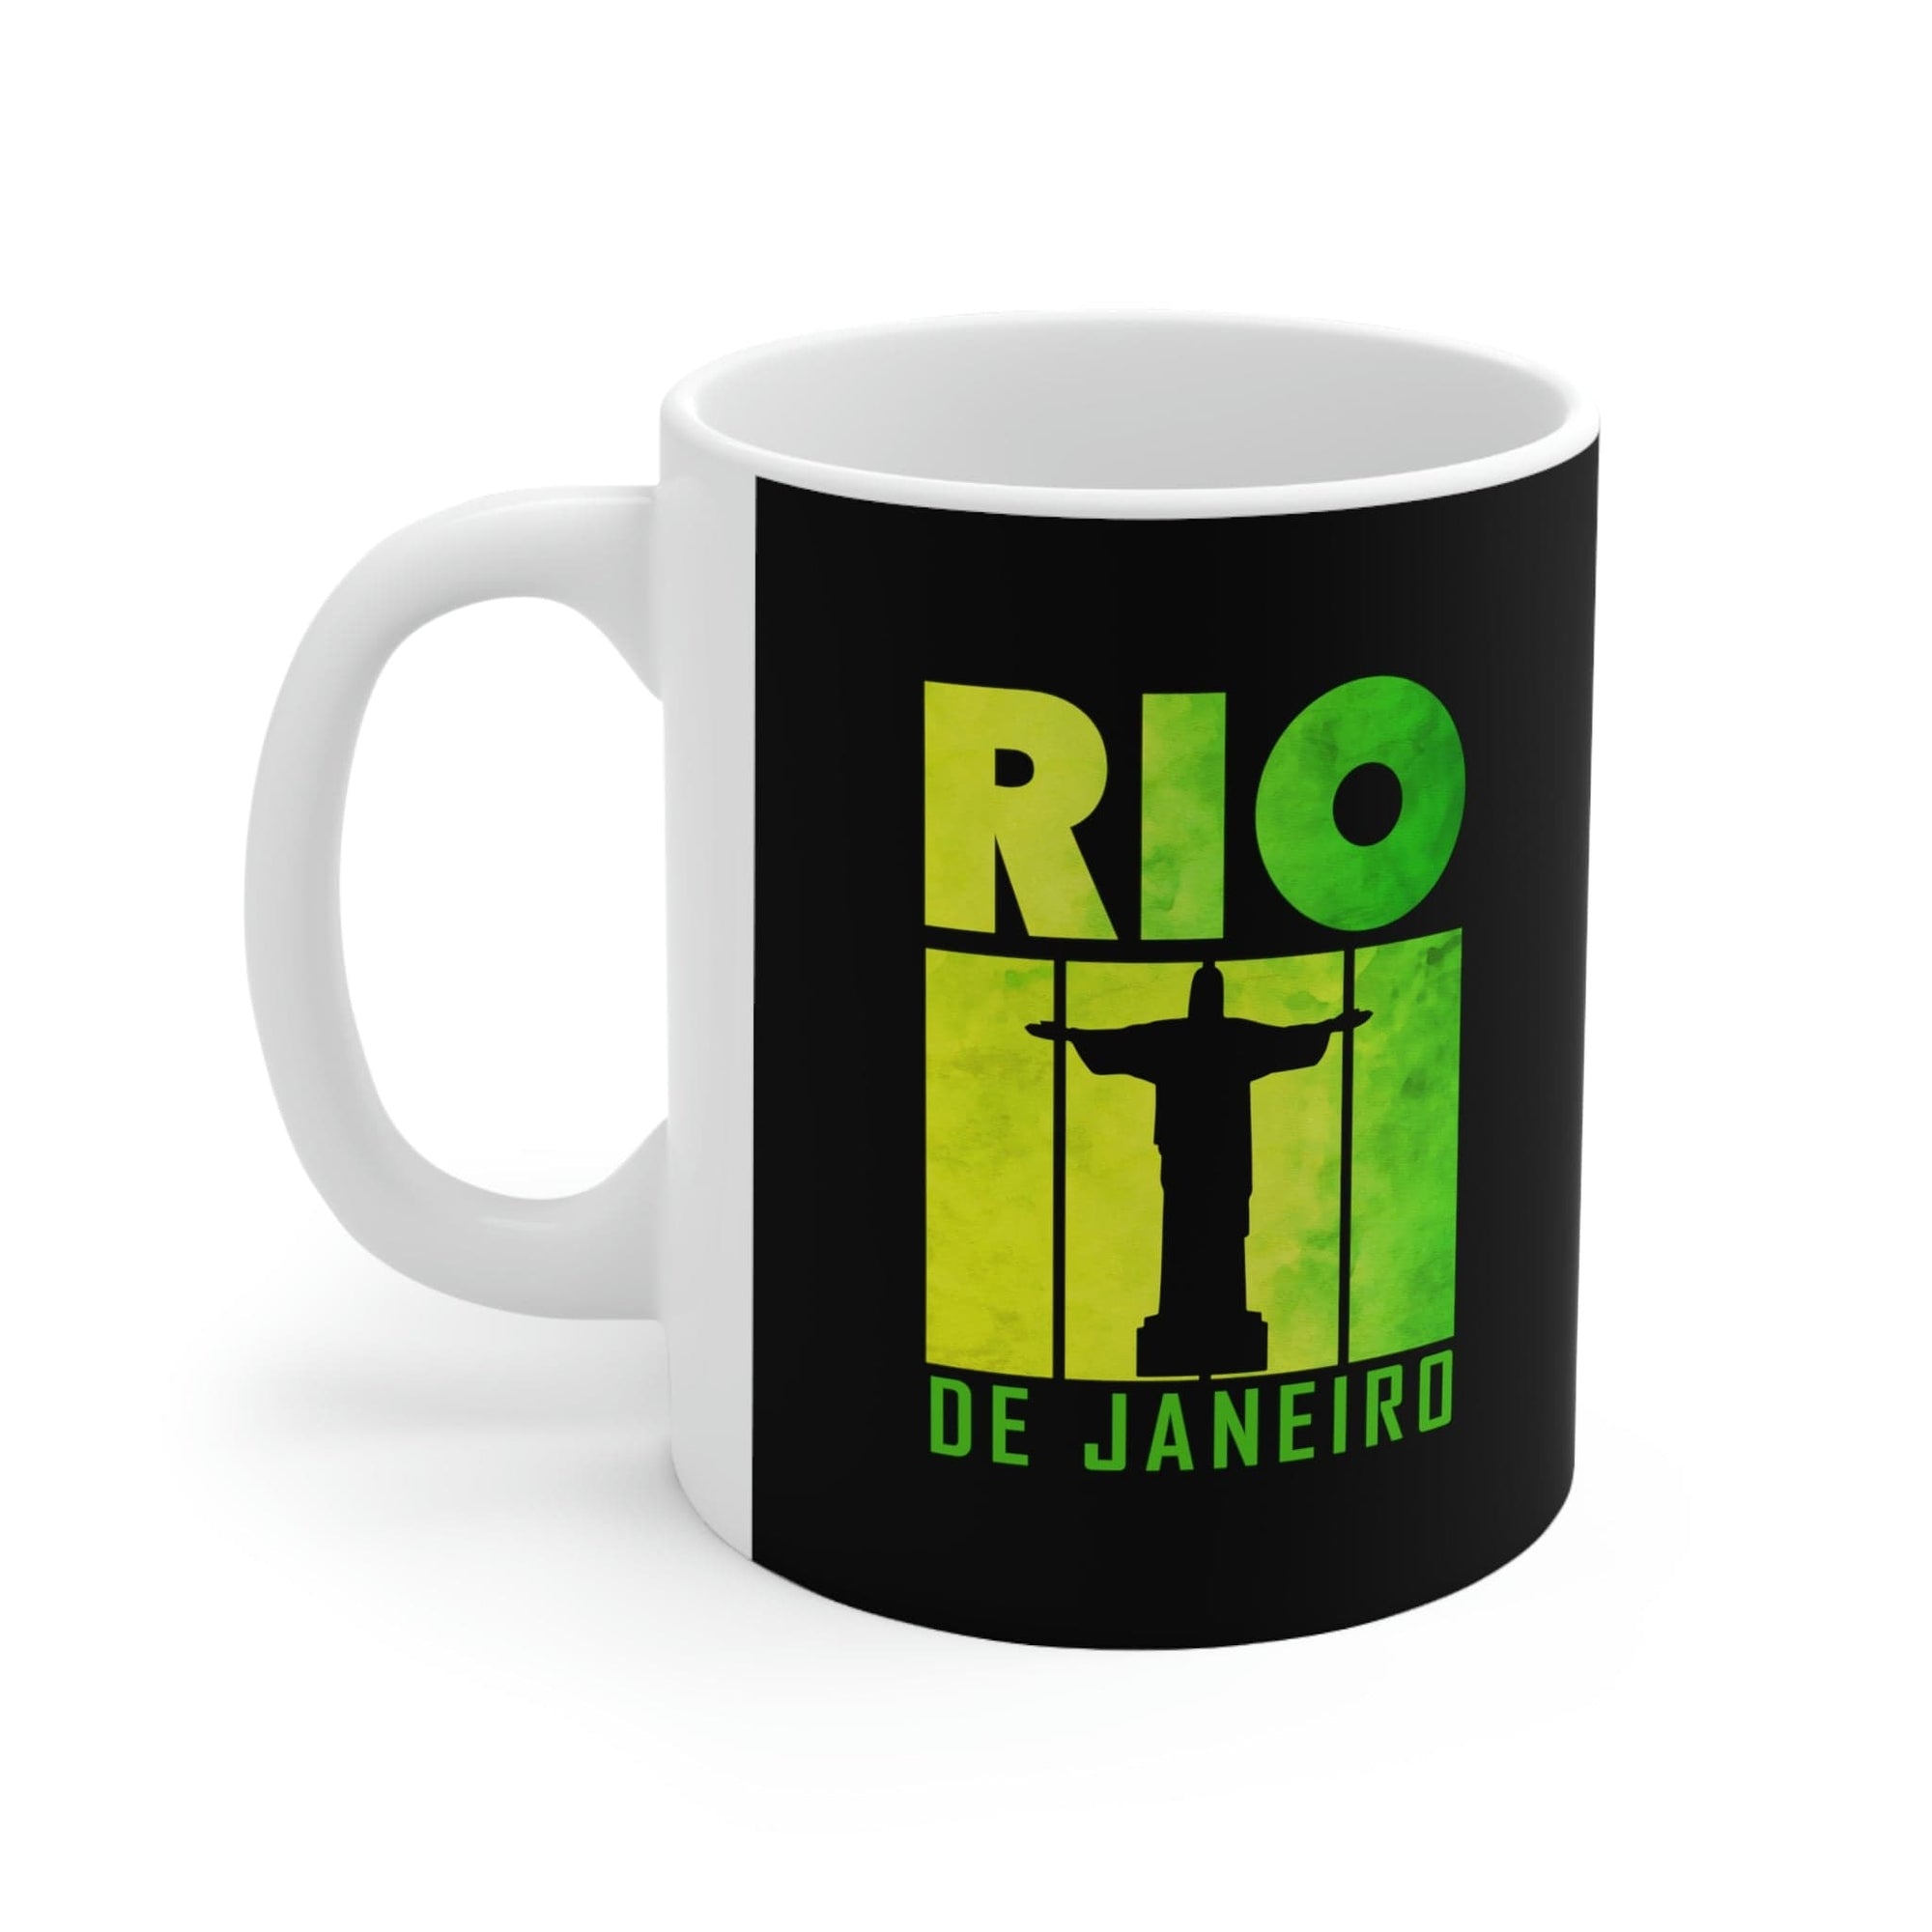 RIO DE JANEIRO - Awesome Ceramic Mug, Exclusive Design